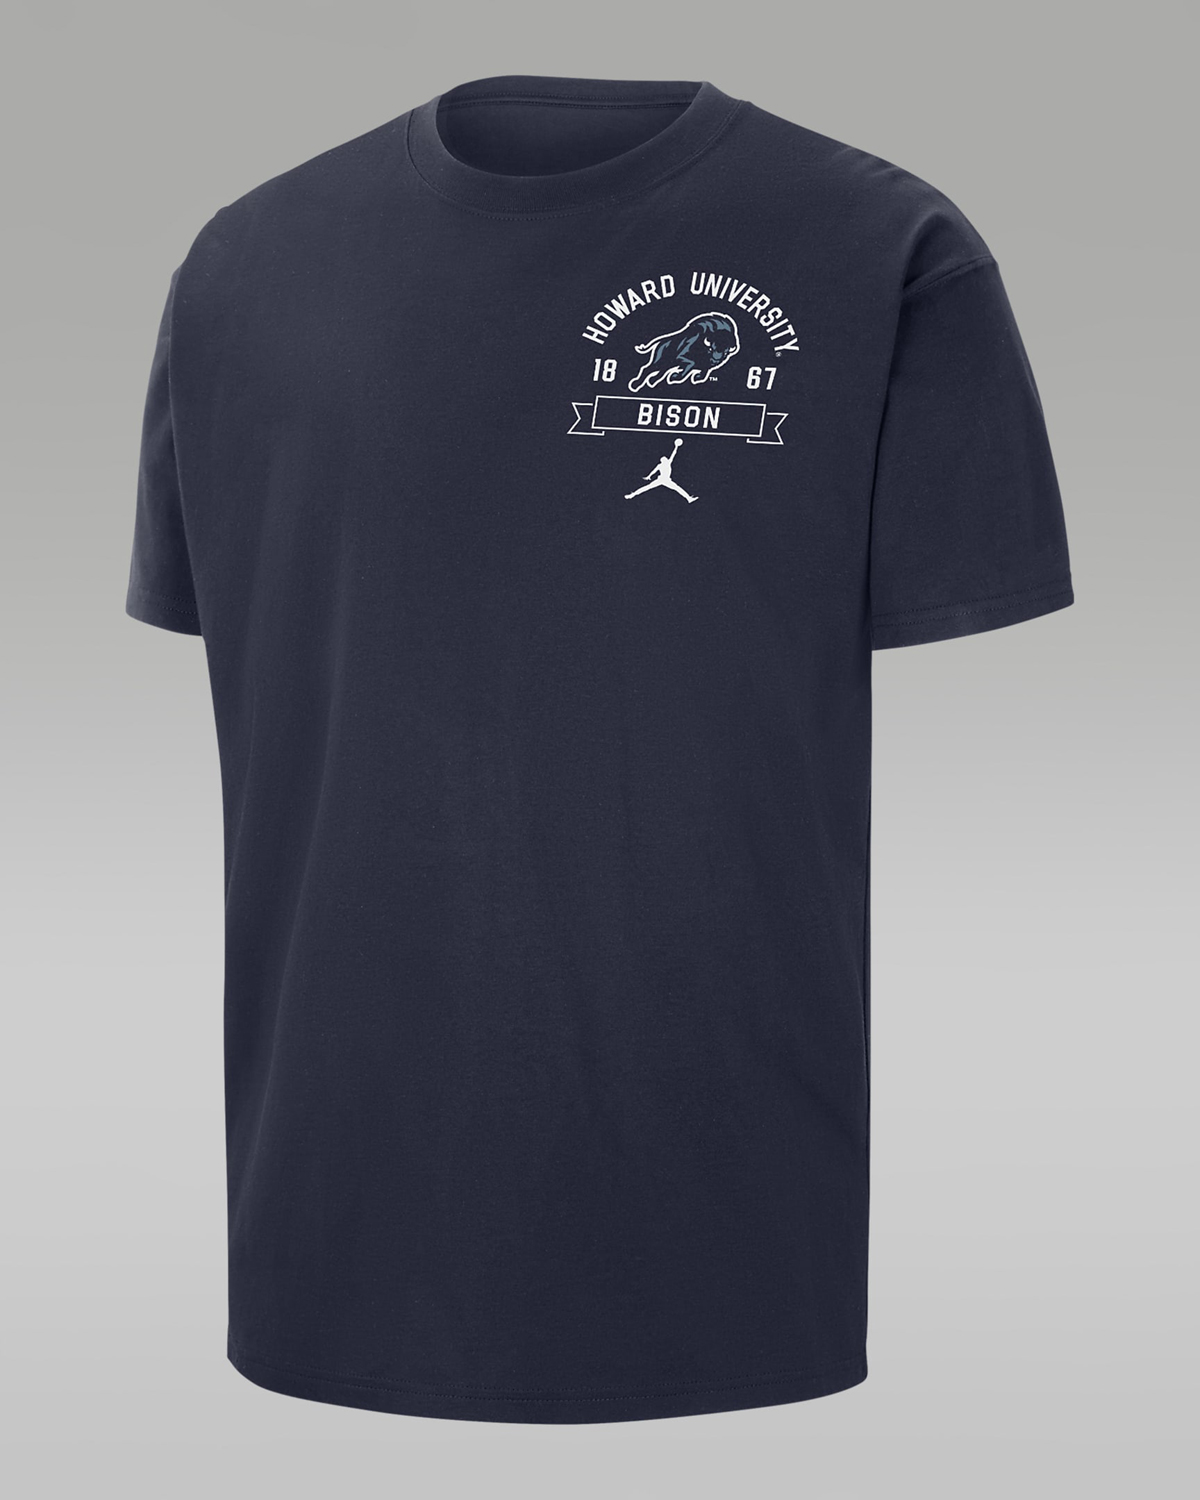 Jordan-Howard-University-Max90-T-Shirt